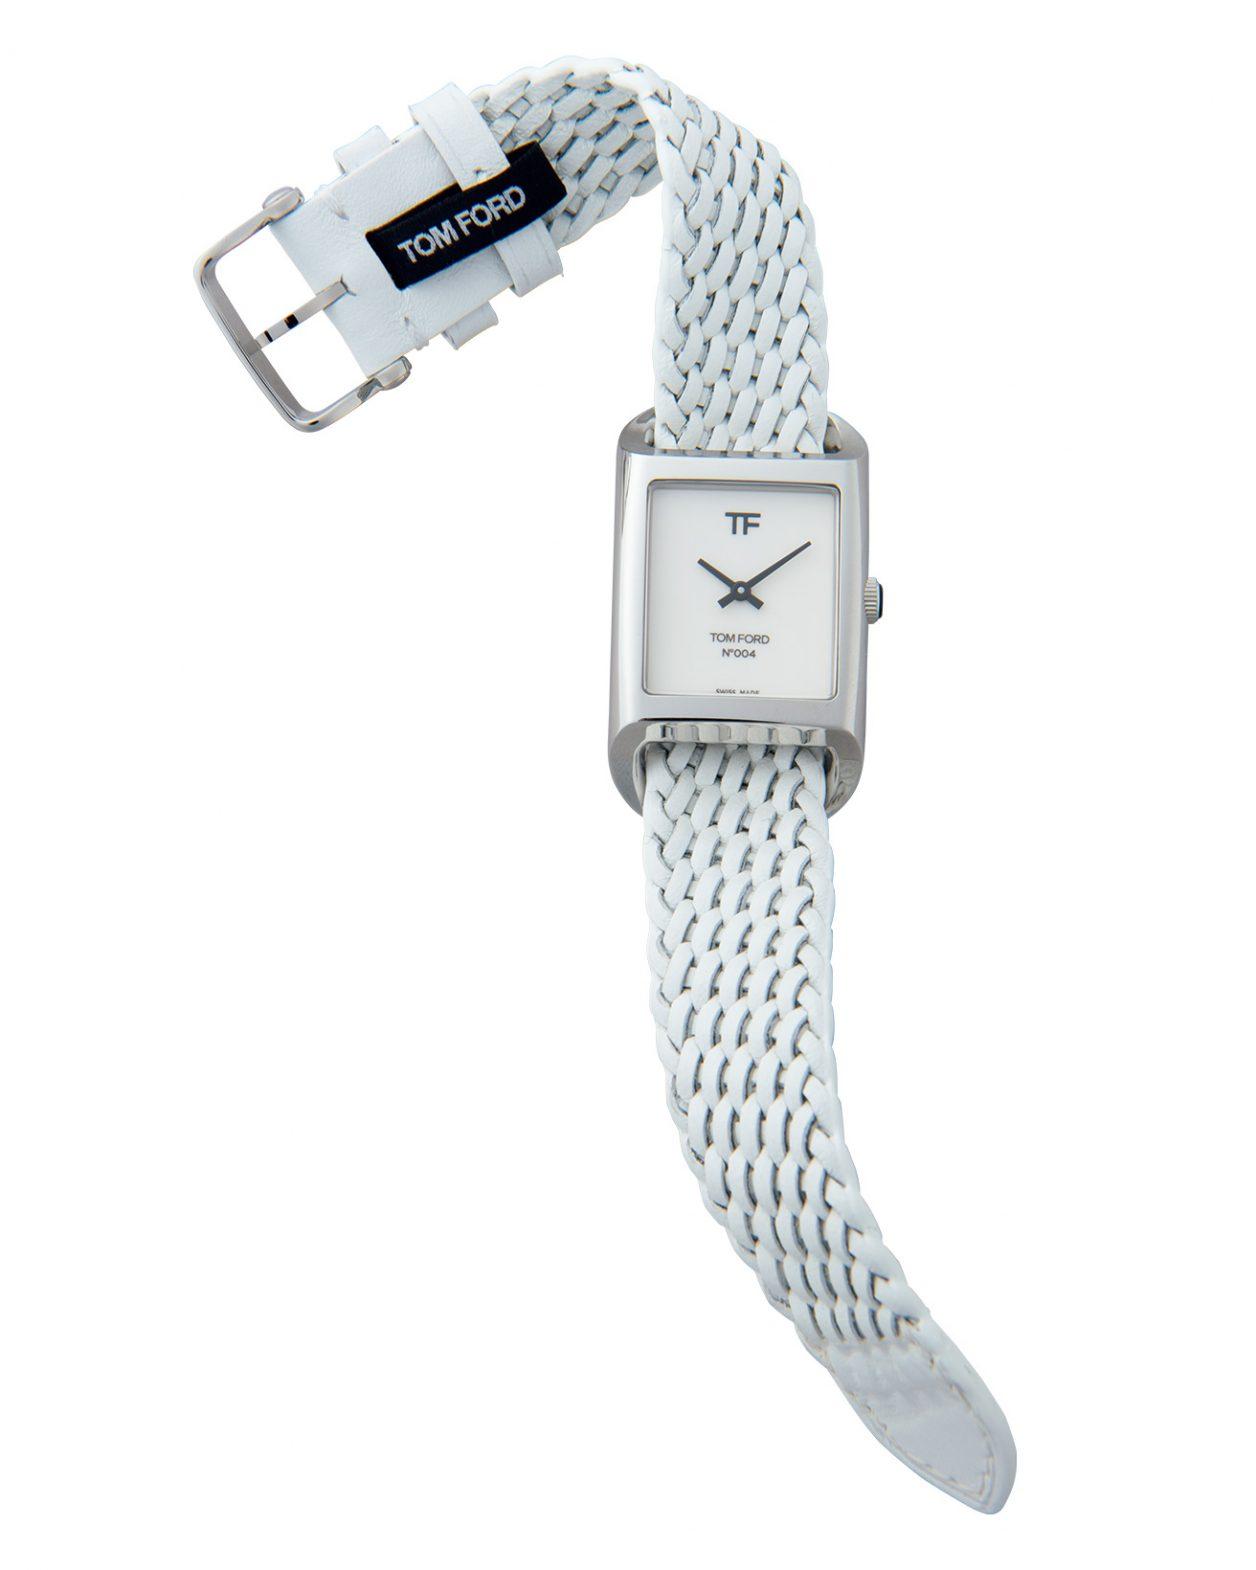 リサイクルステンレスを使ったサステナビリティな腕時計〈トム フォード タイムピース〉。